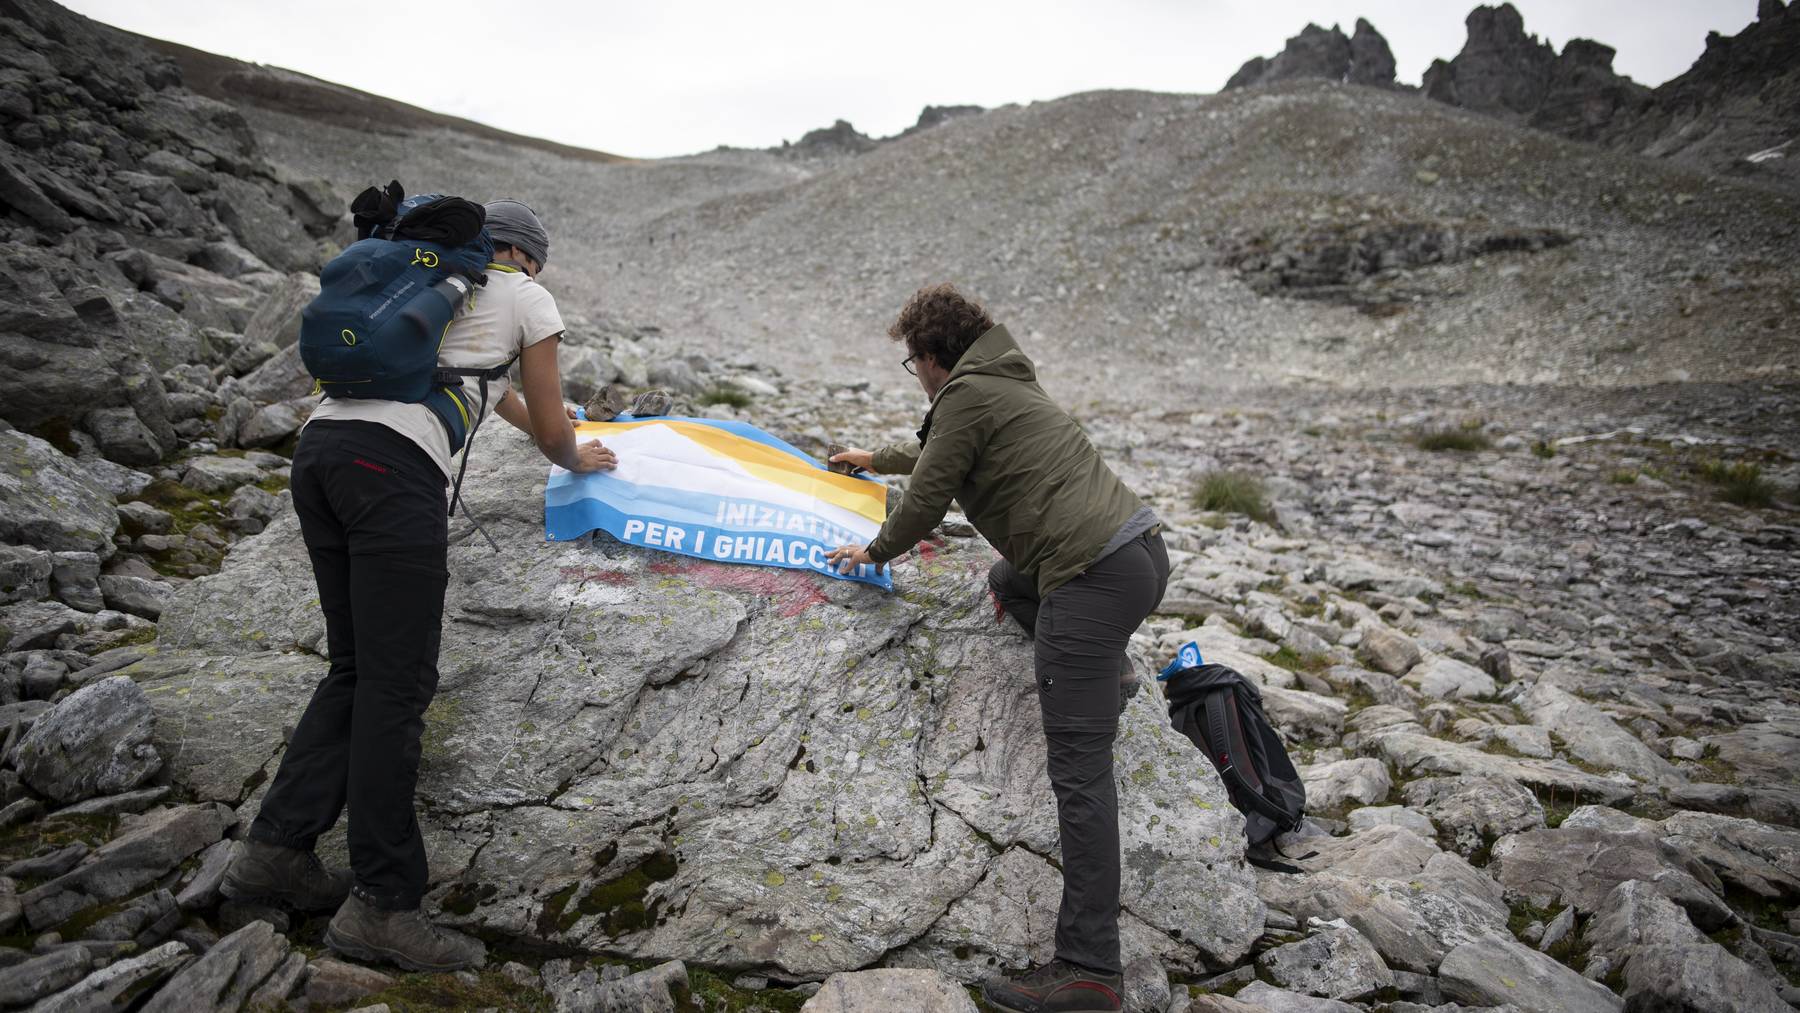 Gilt als erstes Schweizer Gletscher-Opfer: Aktivisten gedenken im Herbst dem verschwundenen ewigen Eis am Pizol, dem höchsten St.Galler Berg.